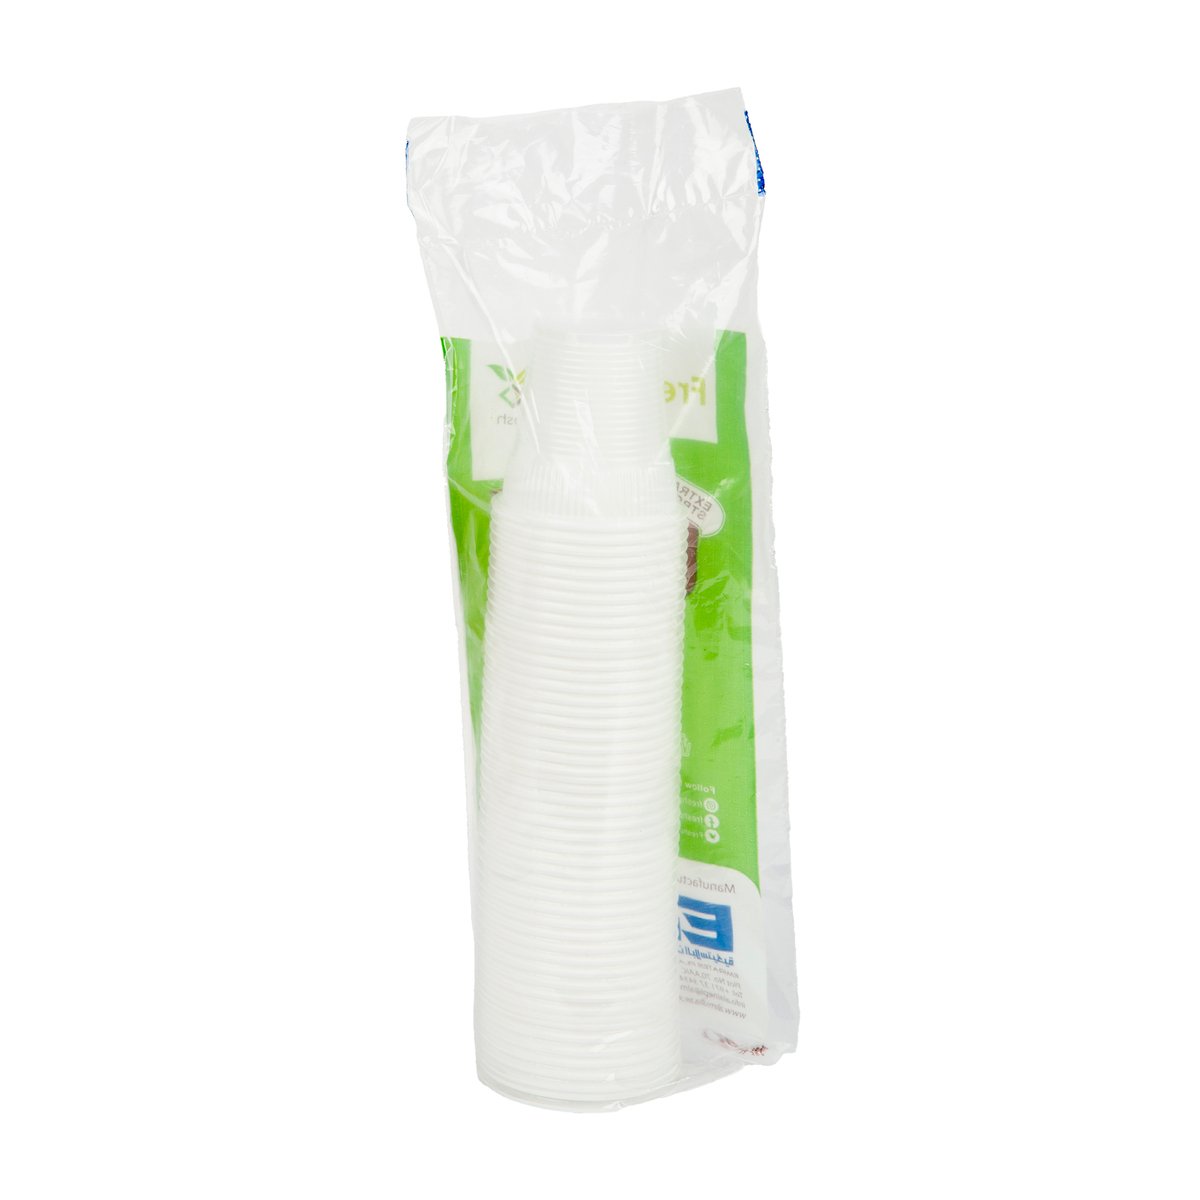 Freshpack Disposable Plastic Cup Size 6oz 50 pcs